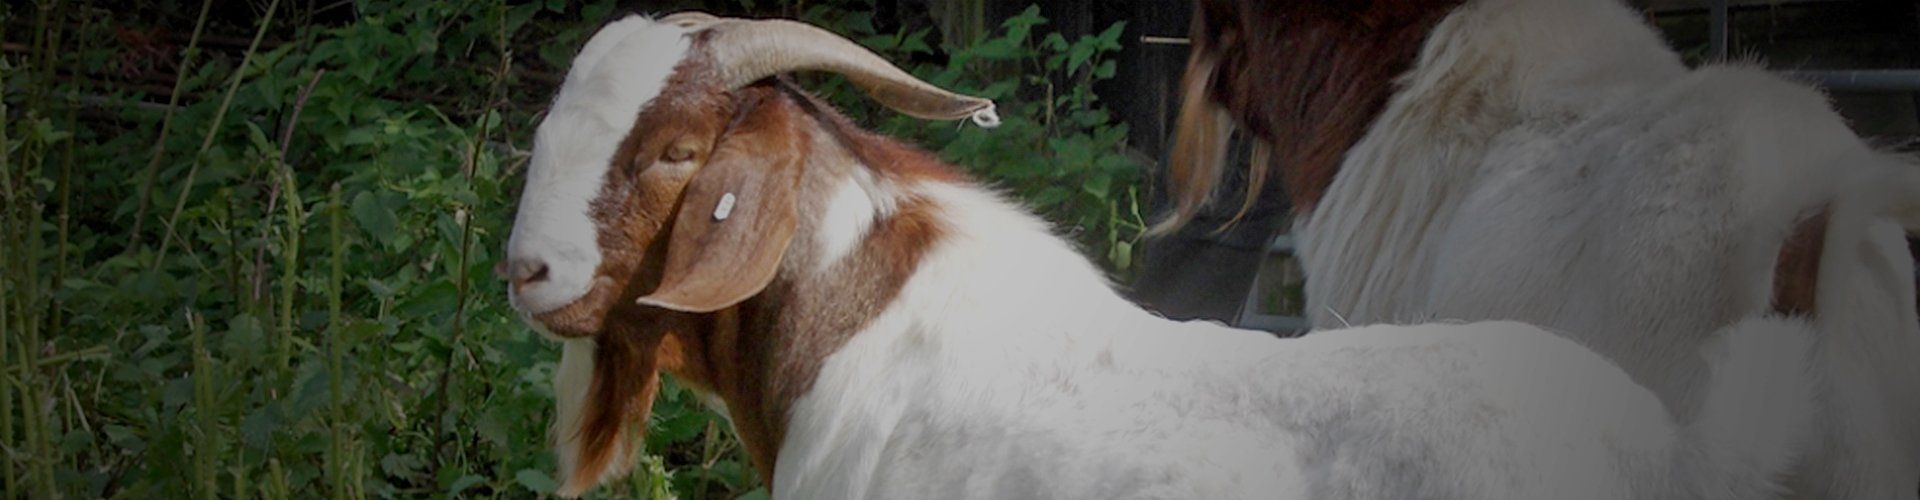 Pedigree Boer goats